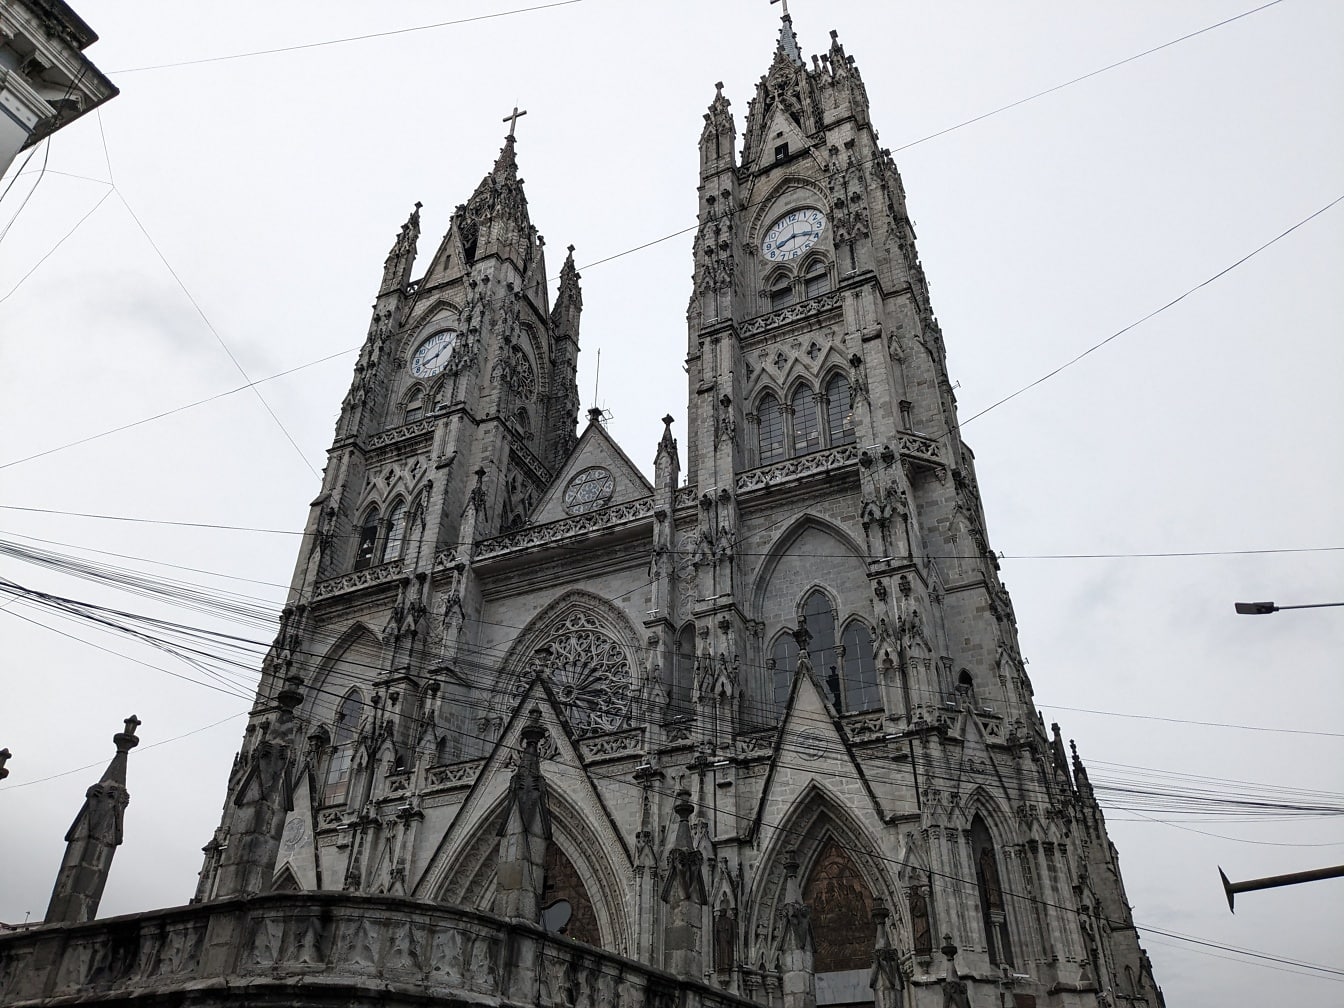 Una basilica neogotica cattolica romana del Voto Nazionale con due torri dell’orologio nella città di Quito in Ecuador